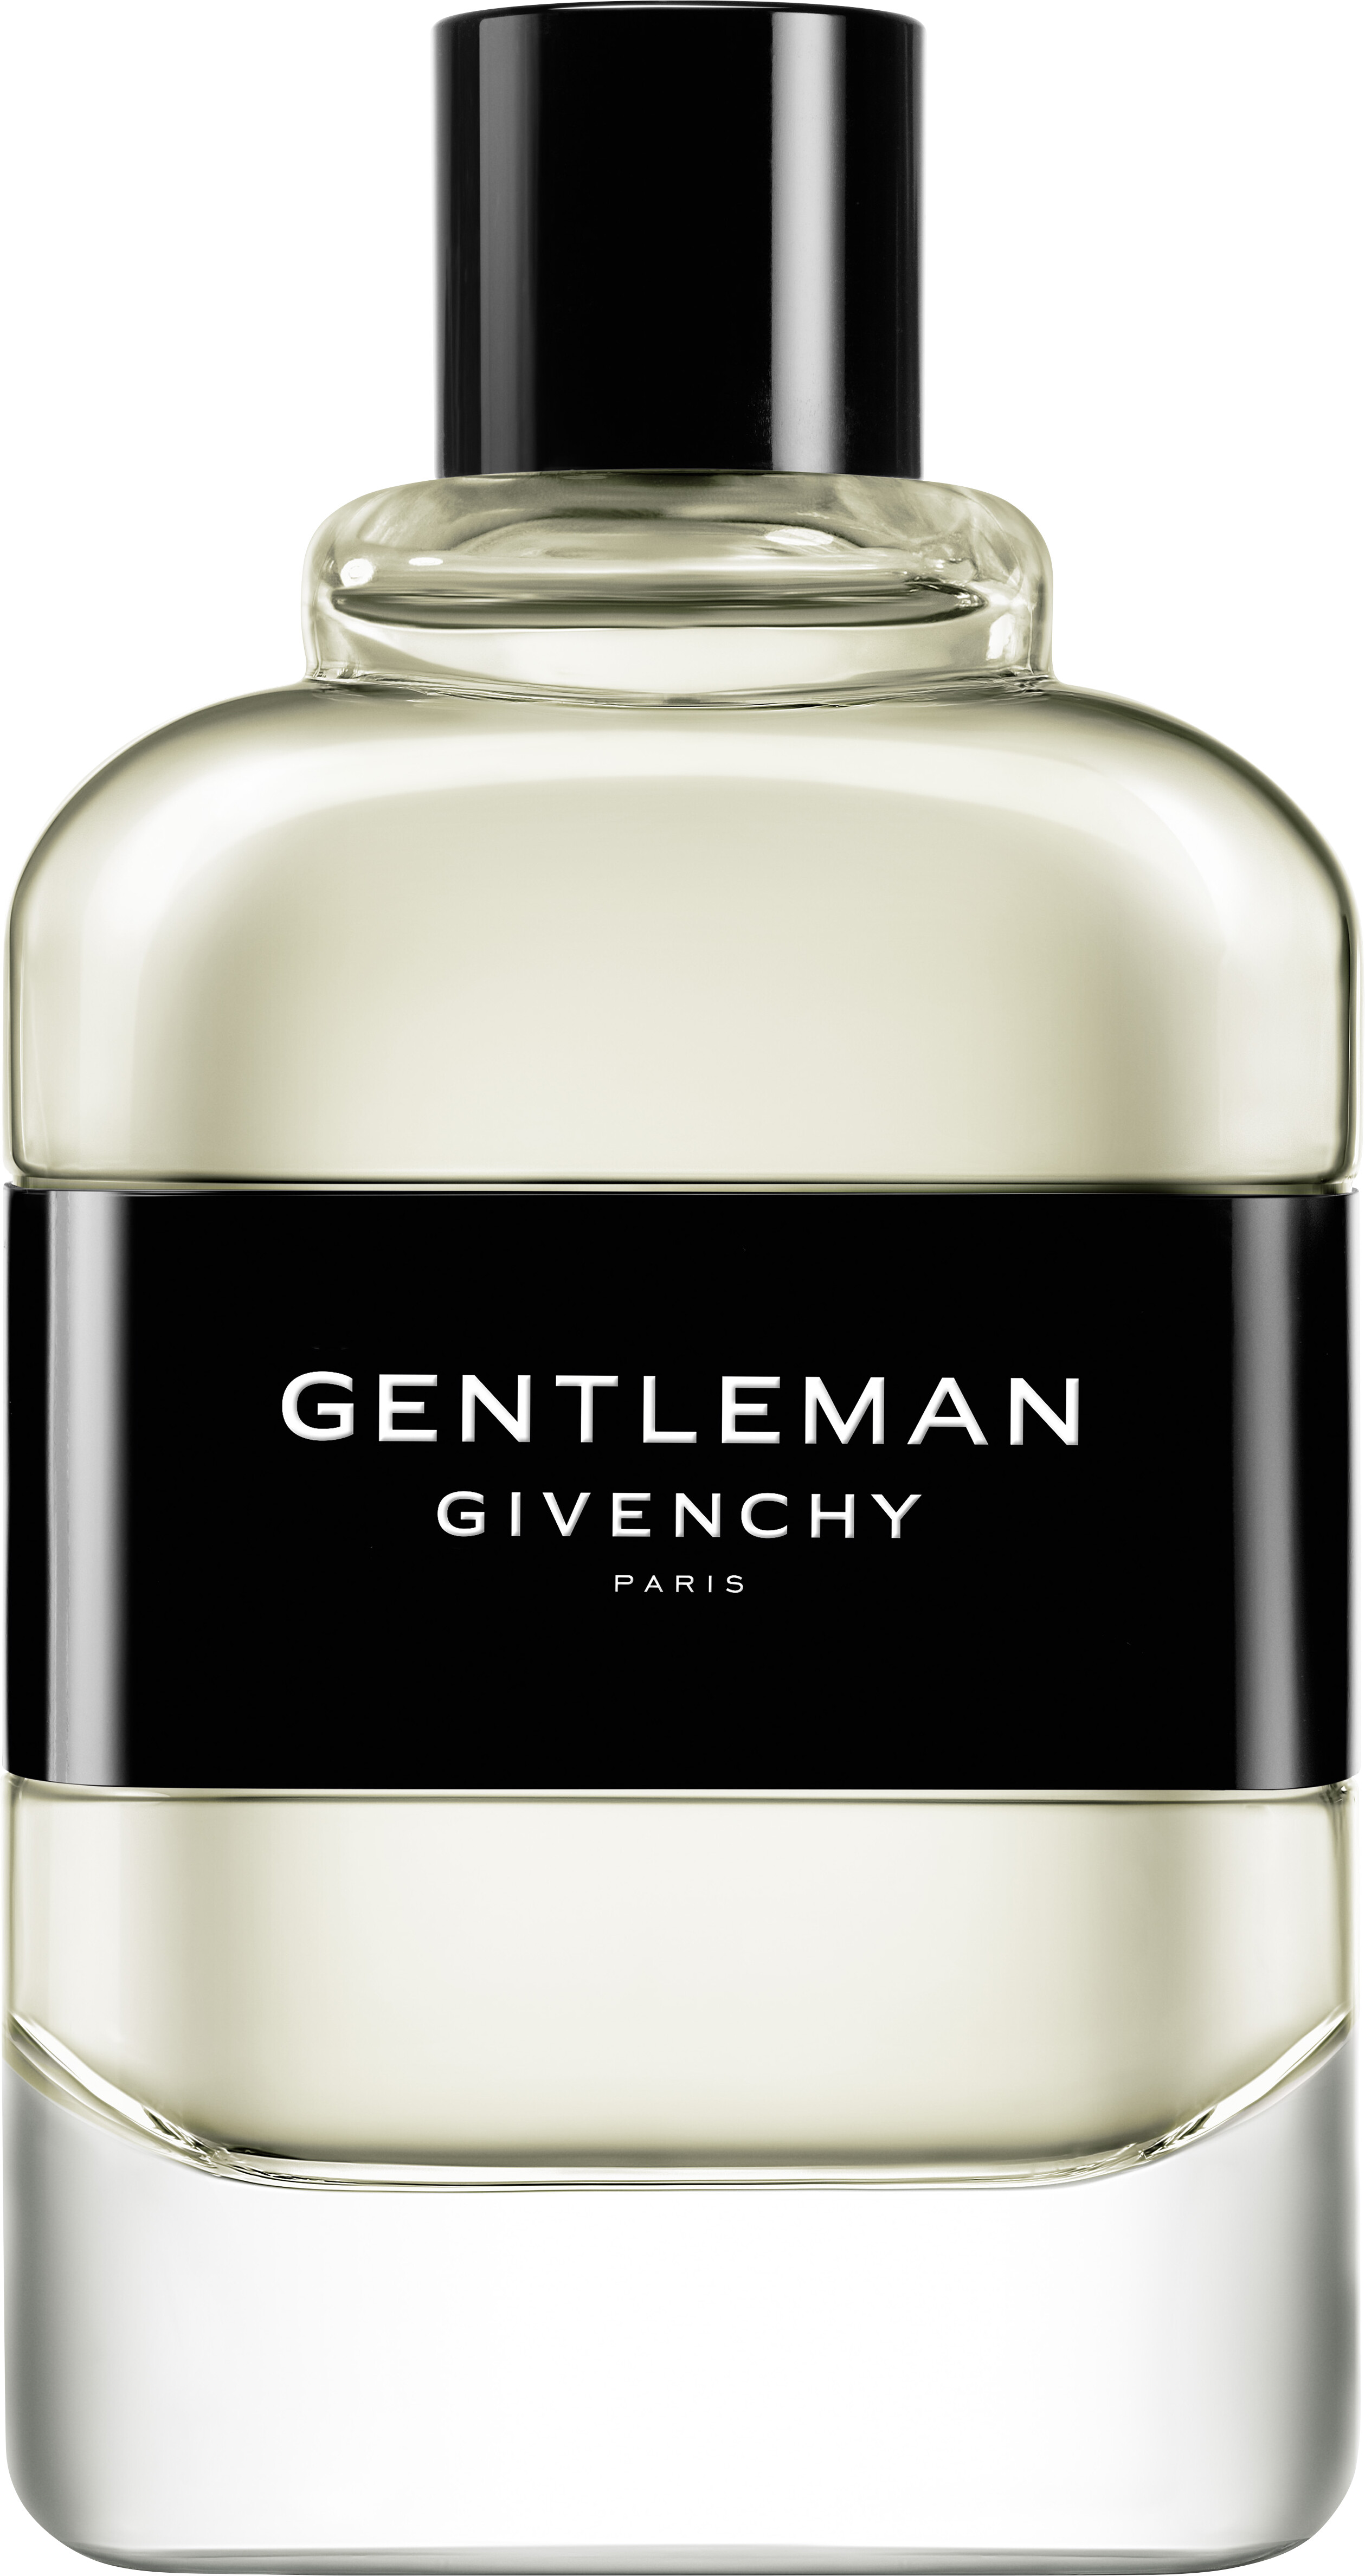 givenchy gentleman uk